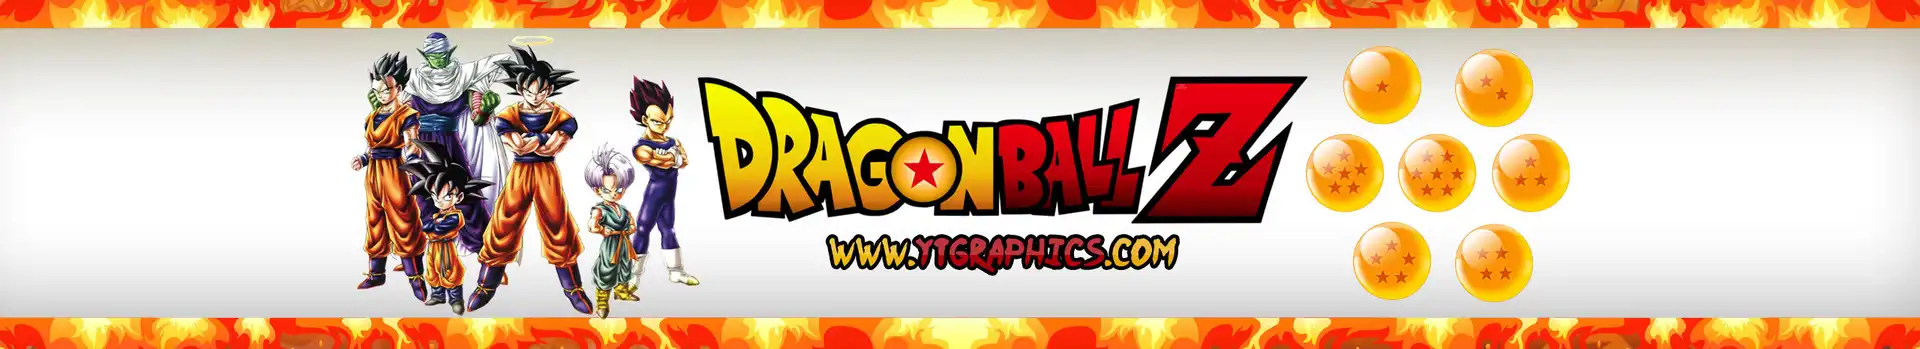 Dragon Ball Z preview